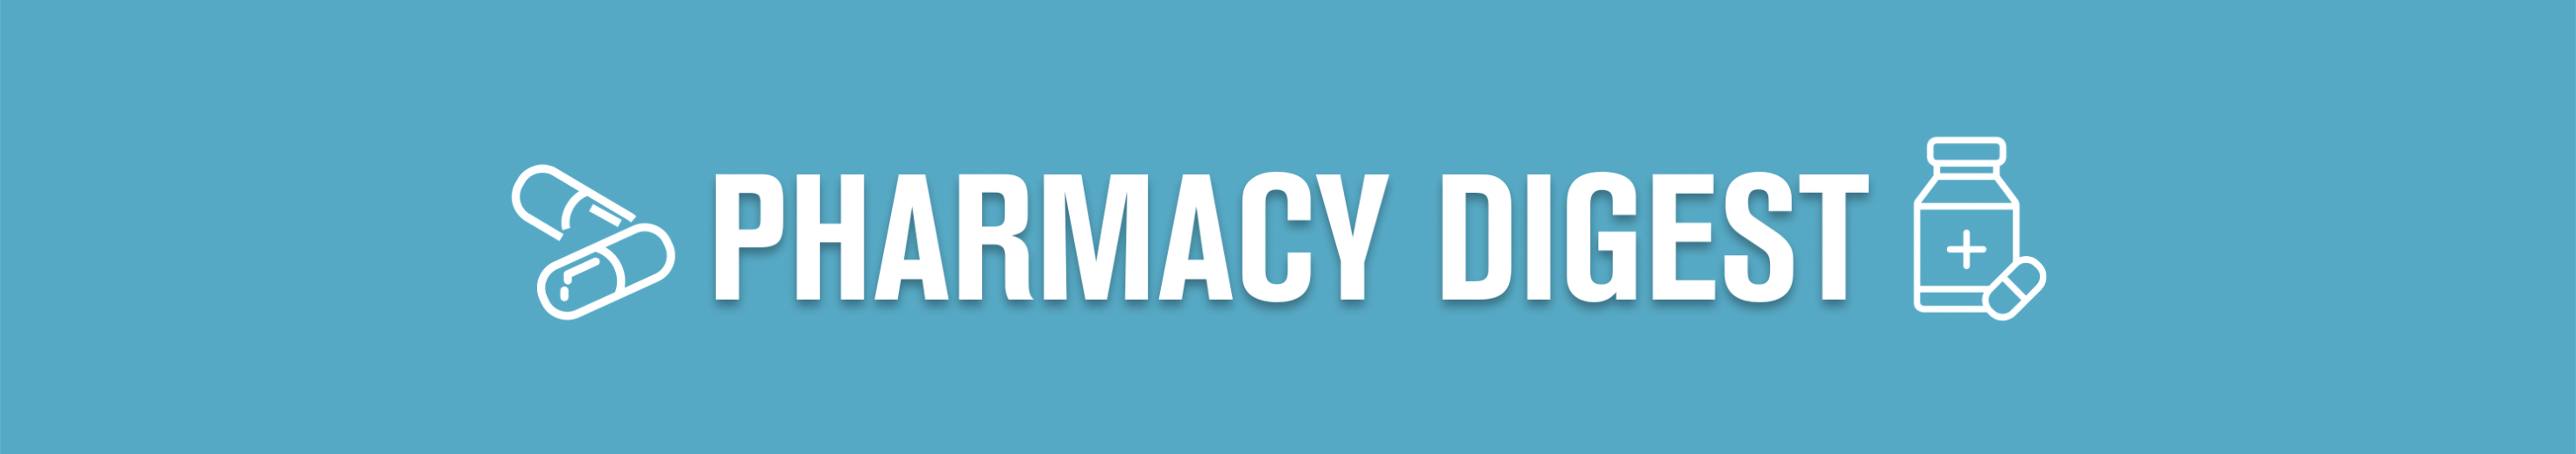 Pharmacy Digest